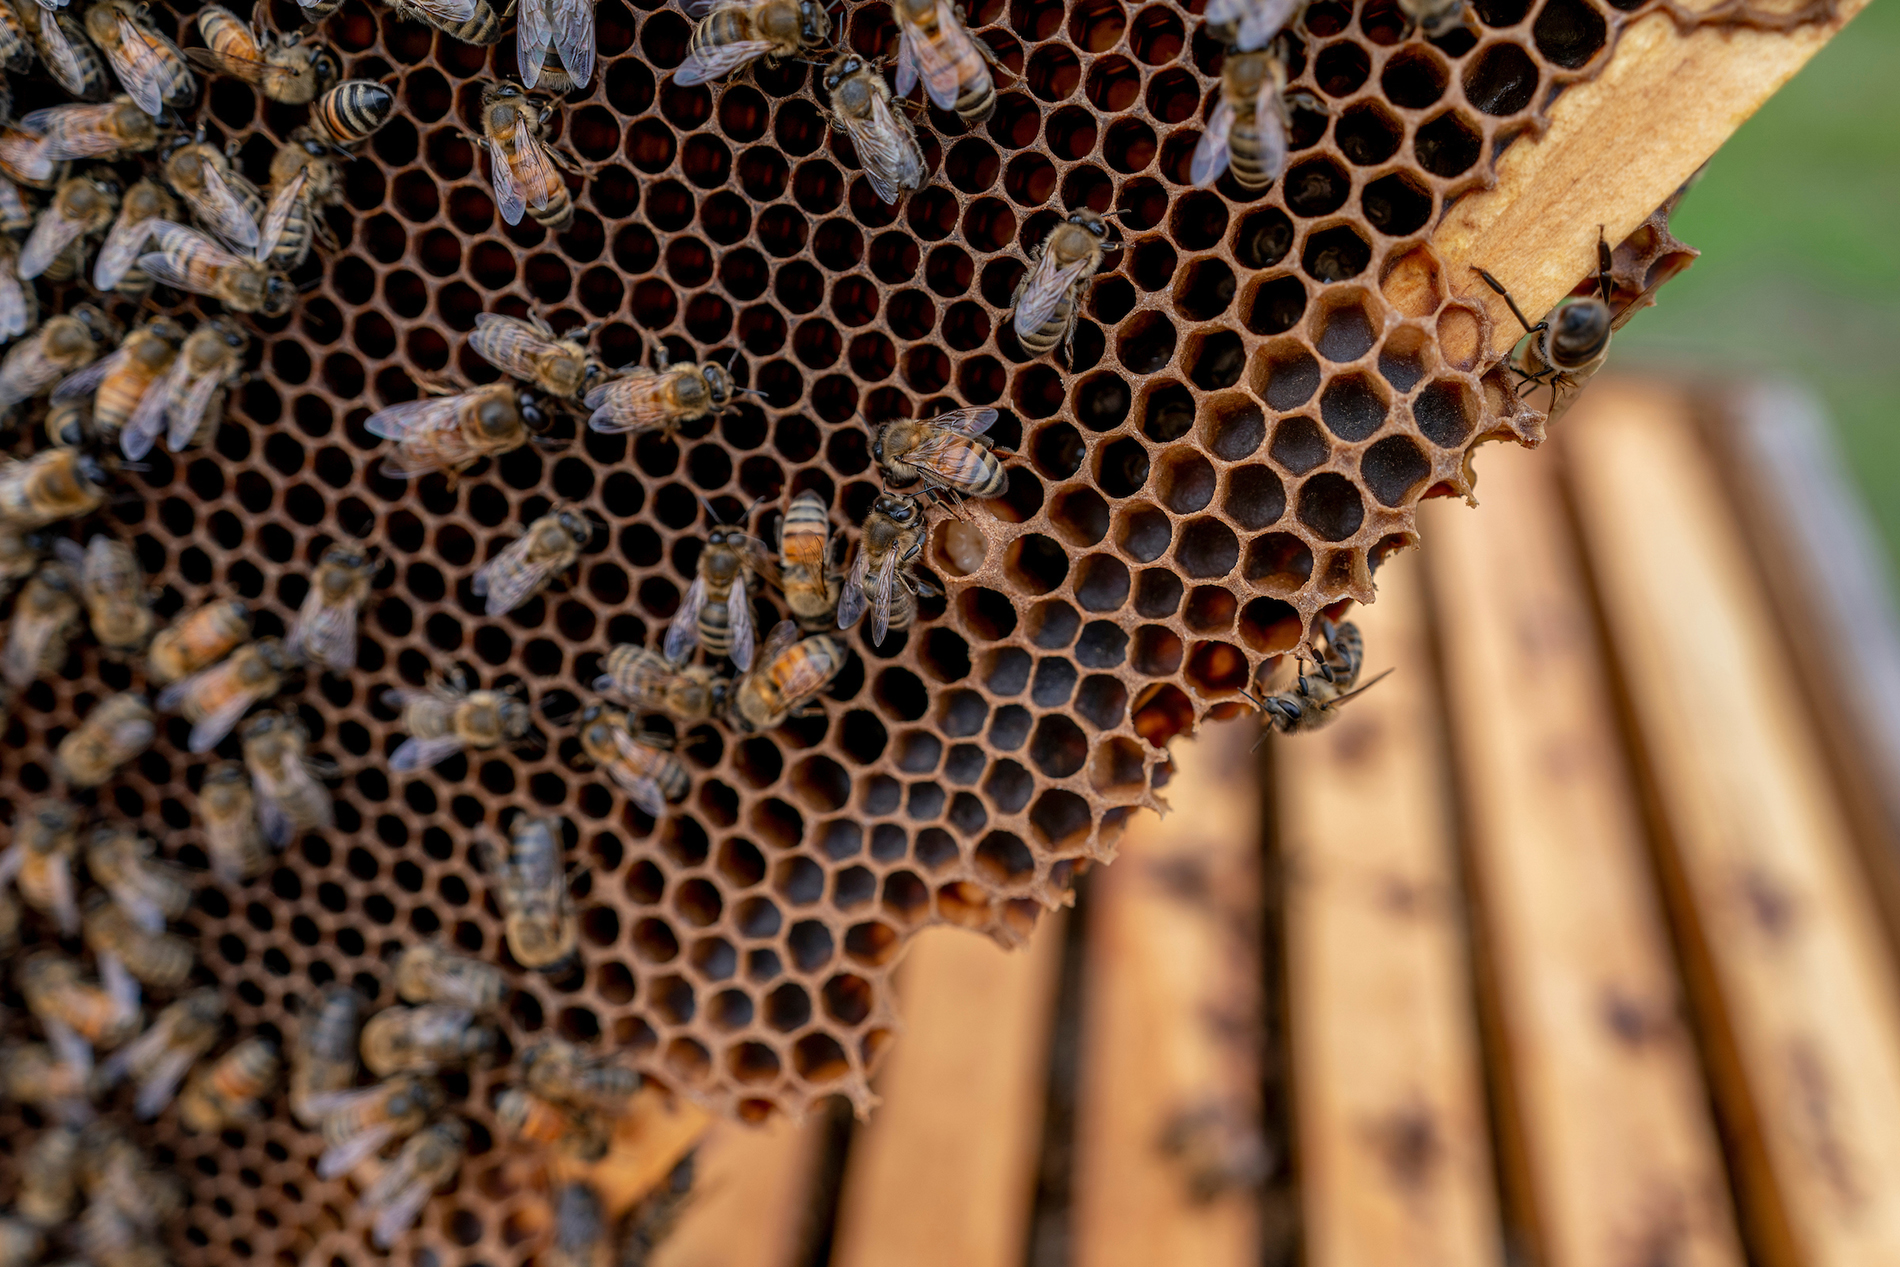 Next-step beekeeping webinar series begins Oct. 17